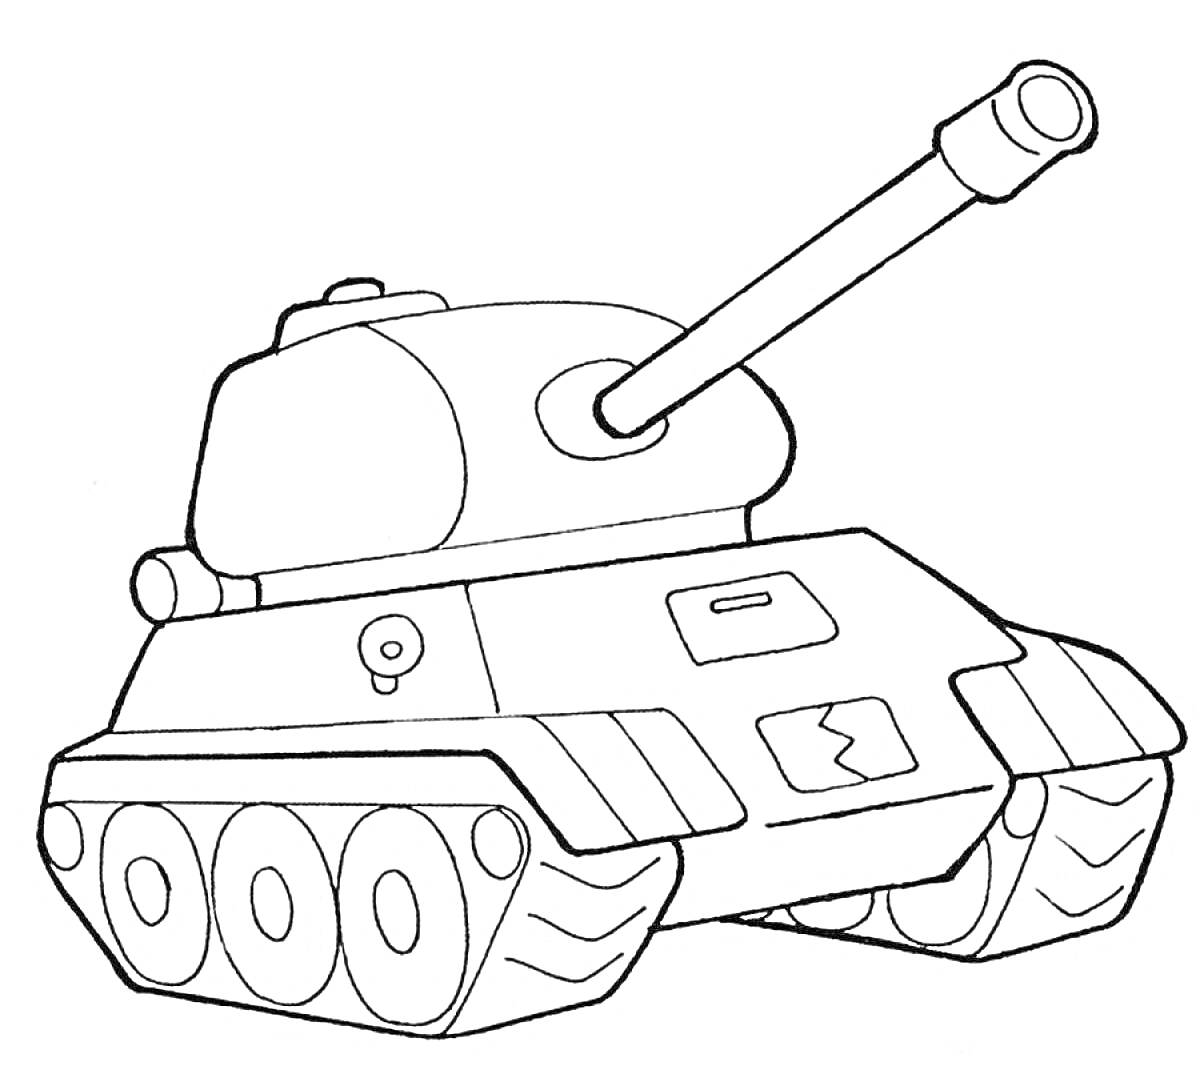 Танковый бой: танк с пушкой, кормовая часть танка, передние и задние гусеницы